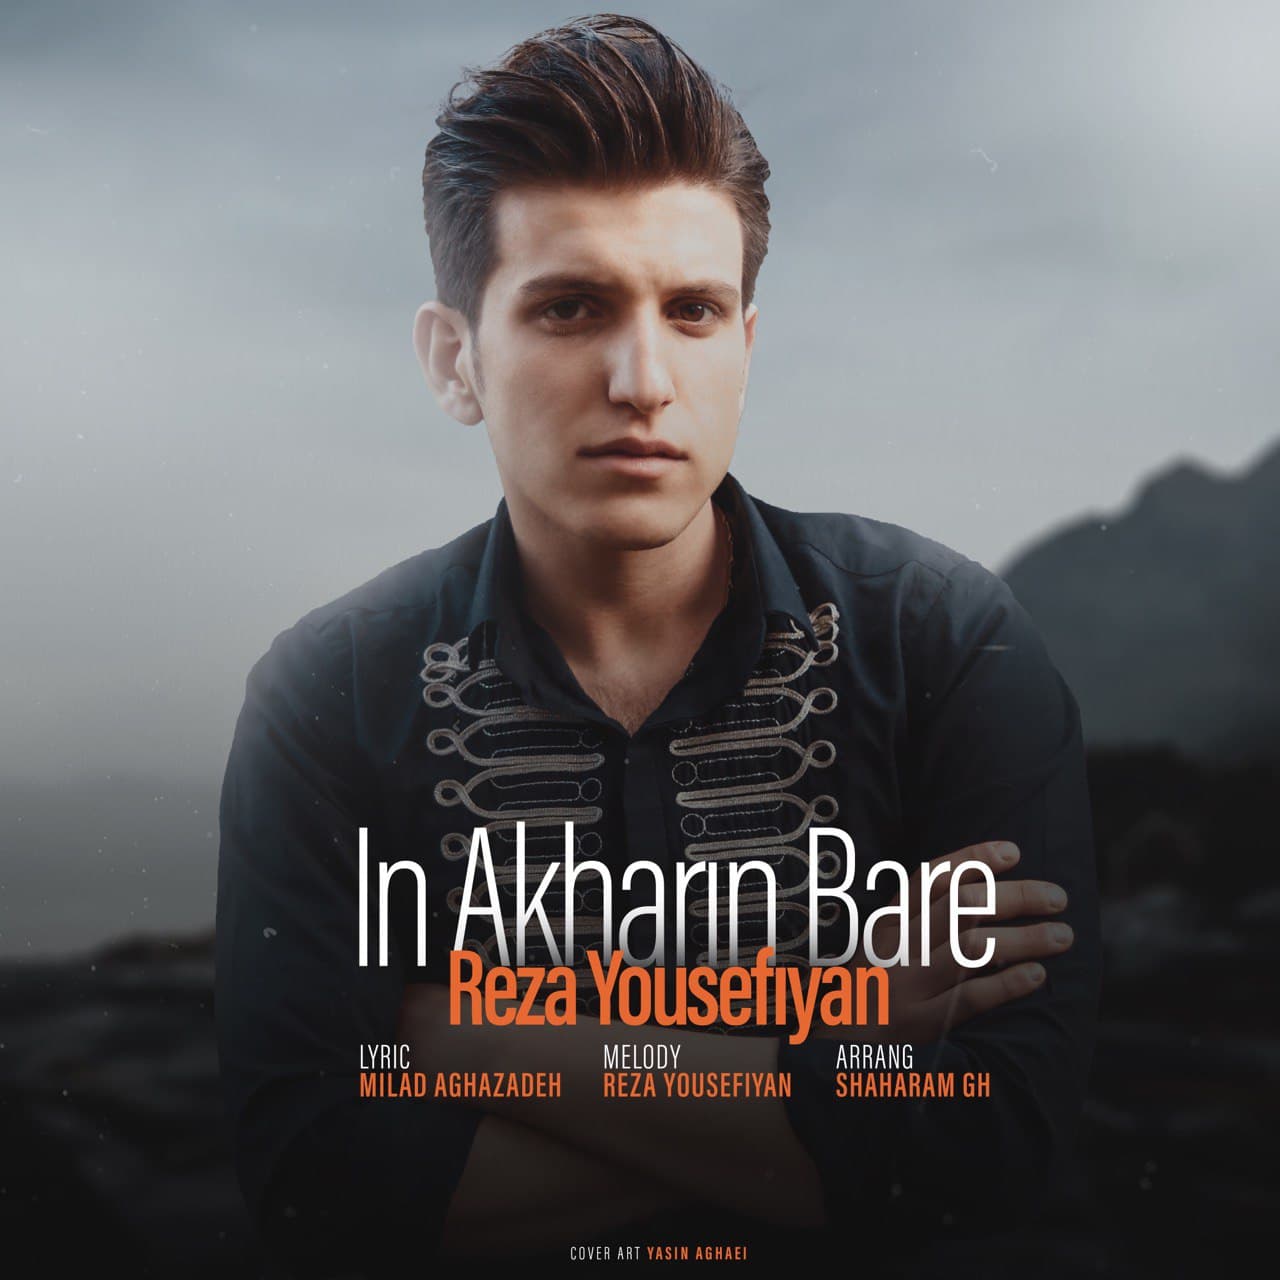  دانلود آهنگ جدید رضا یوسفیان - این آخرین بار | Download New Music By Reza Yousefiyan - In Akharin Bare